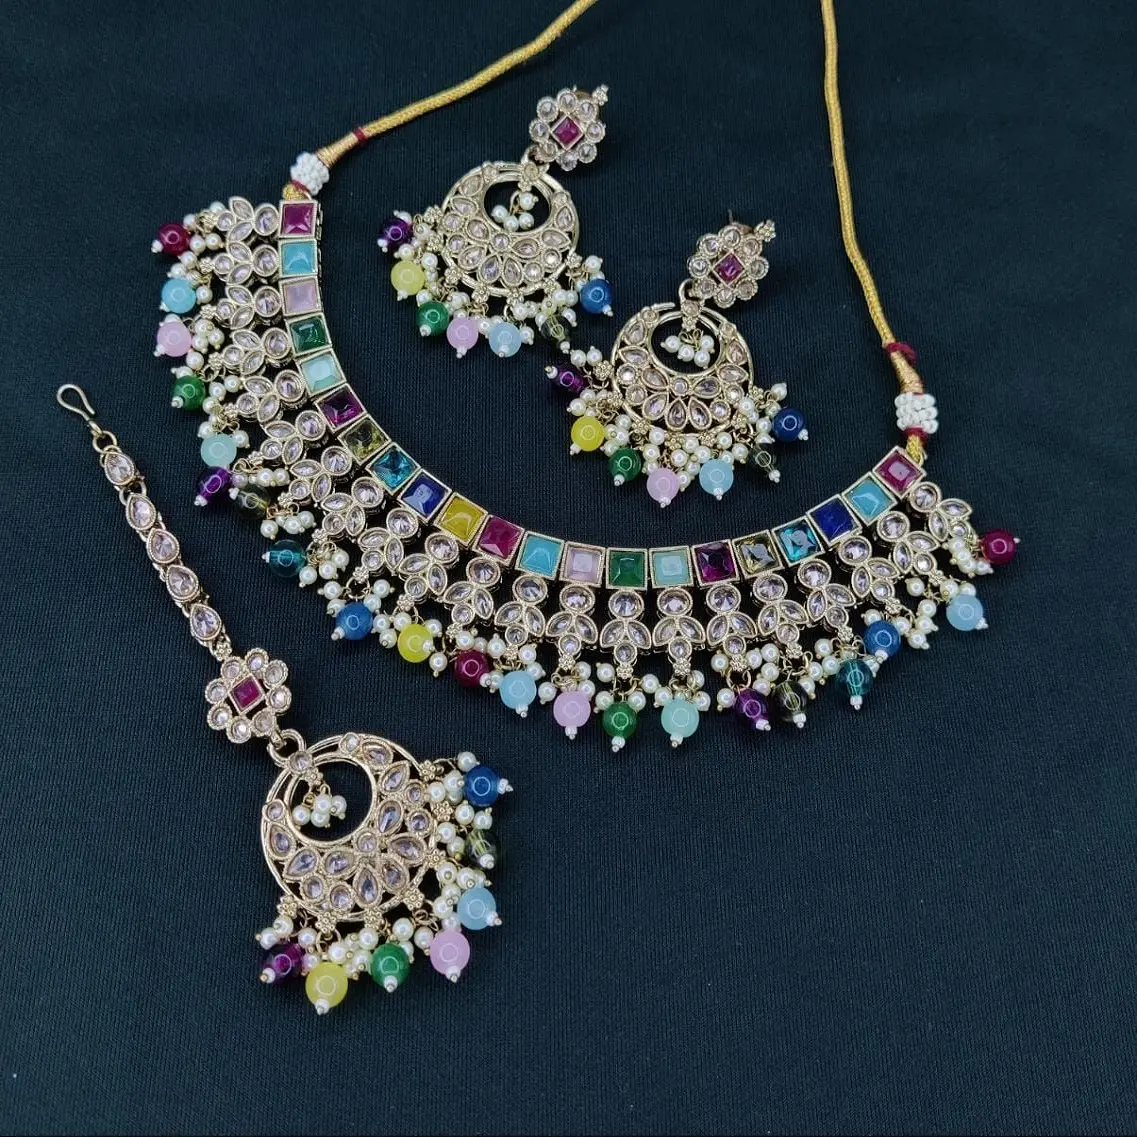 بيع بالجملة مصنوعات المجوهرات الهندية لؤلؤ صناعي مطرز كريستال كوندان قلادة قلادة مجموعة مجوهرات رمادي